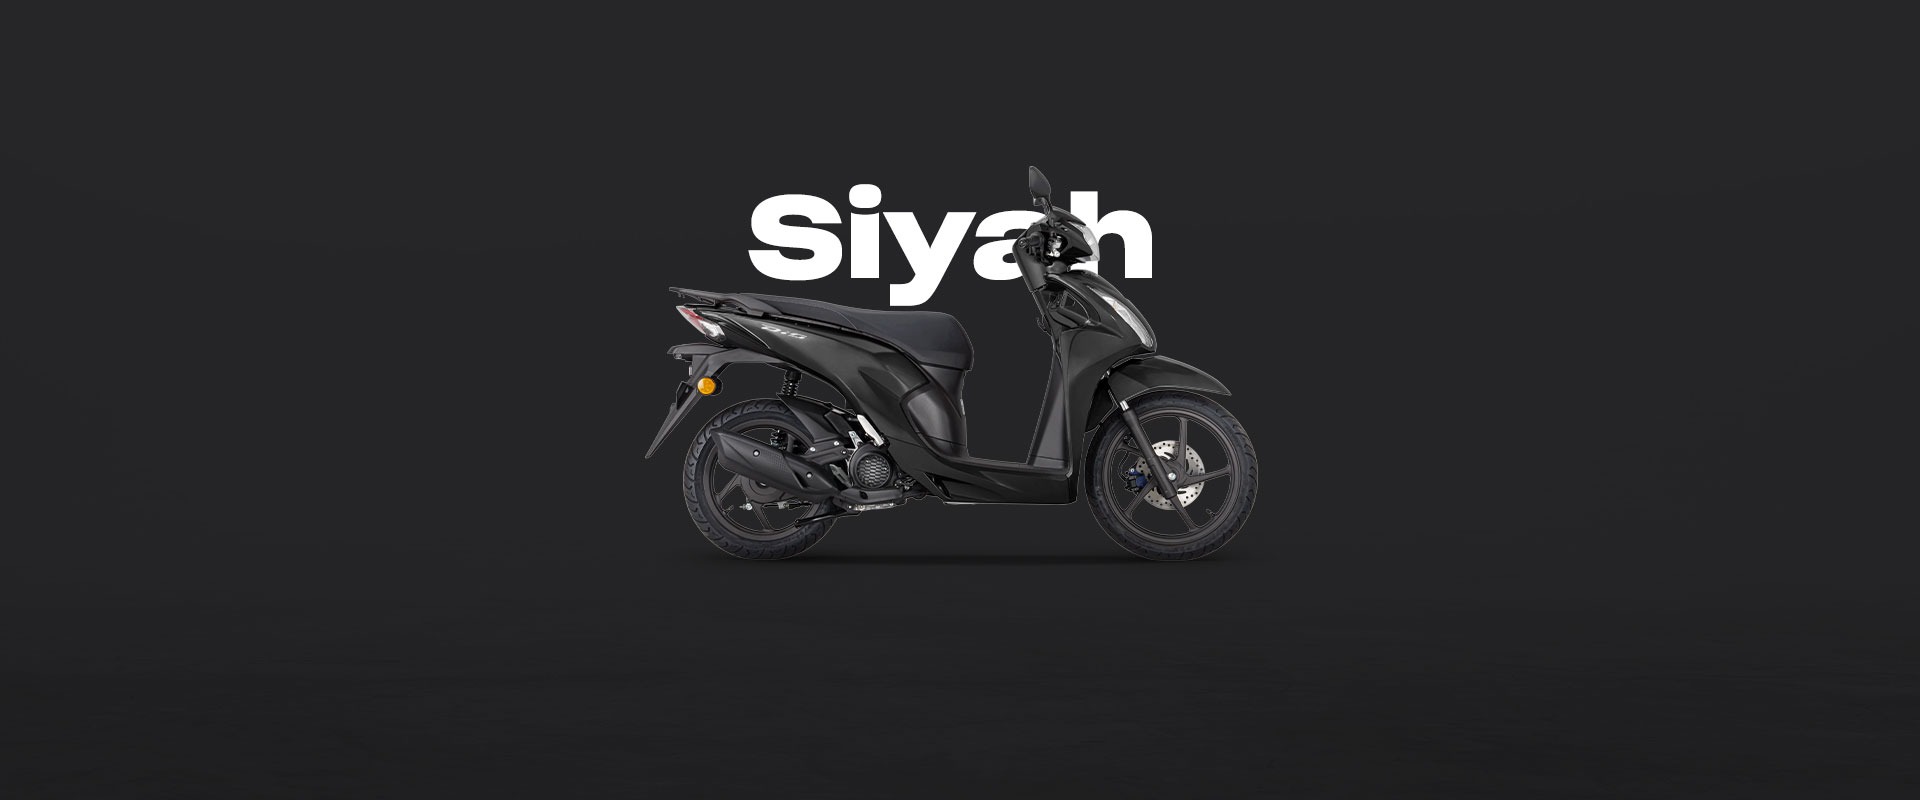  Honda Emre Siyah <br /> Mat Galaxy Black Metallic <br /> (NH A76M)